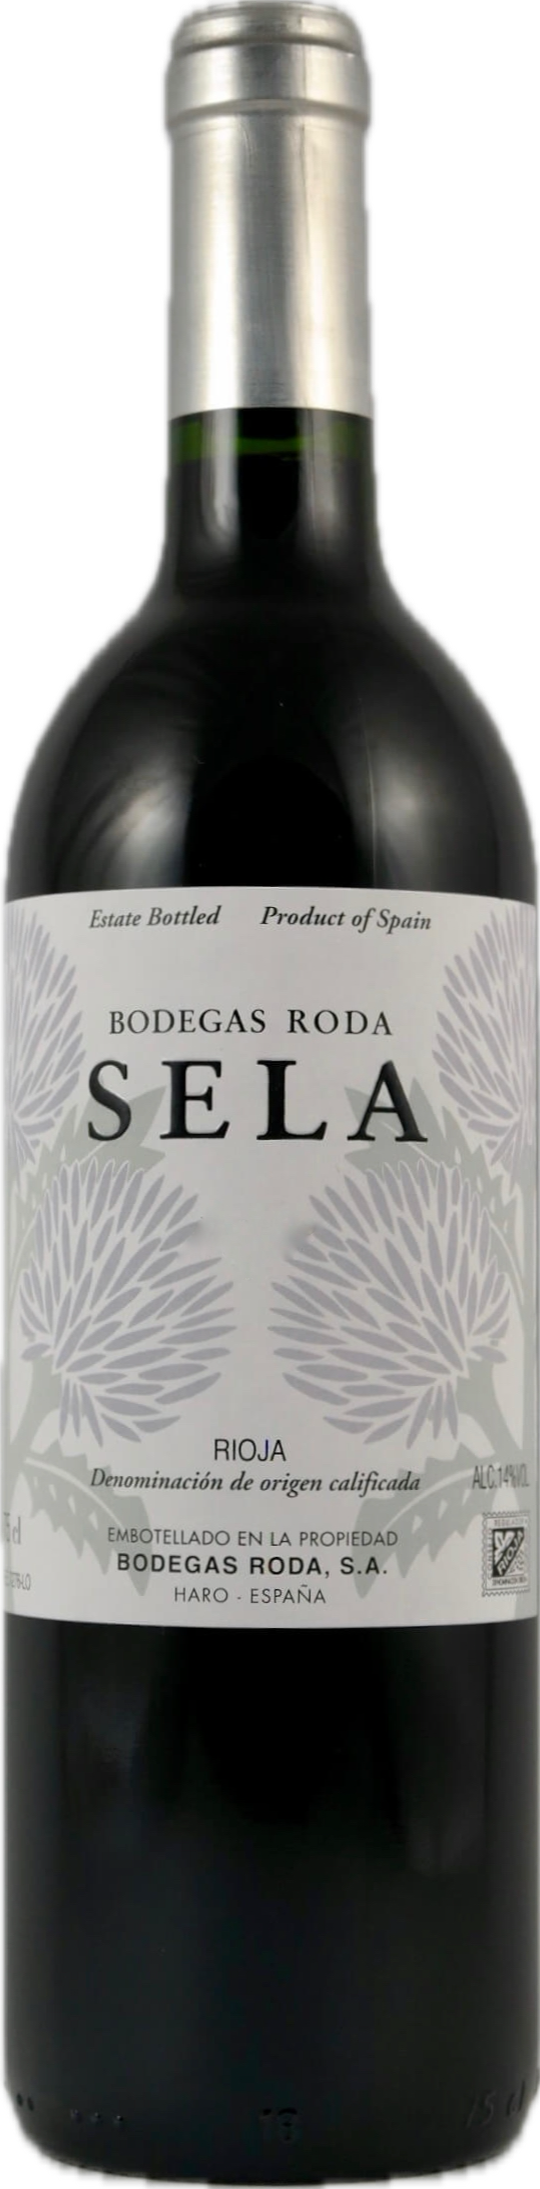 Bodegas Roda Rioja "Sela" 2021